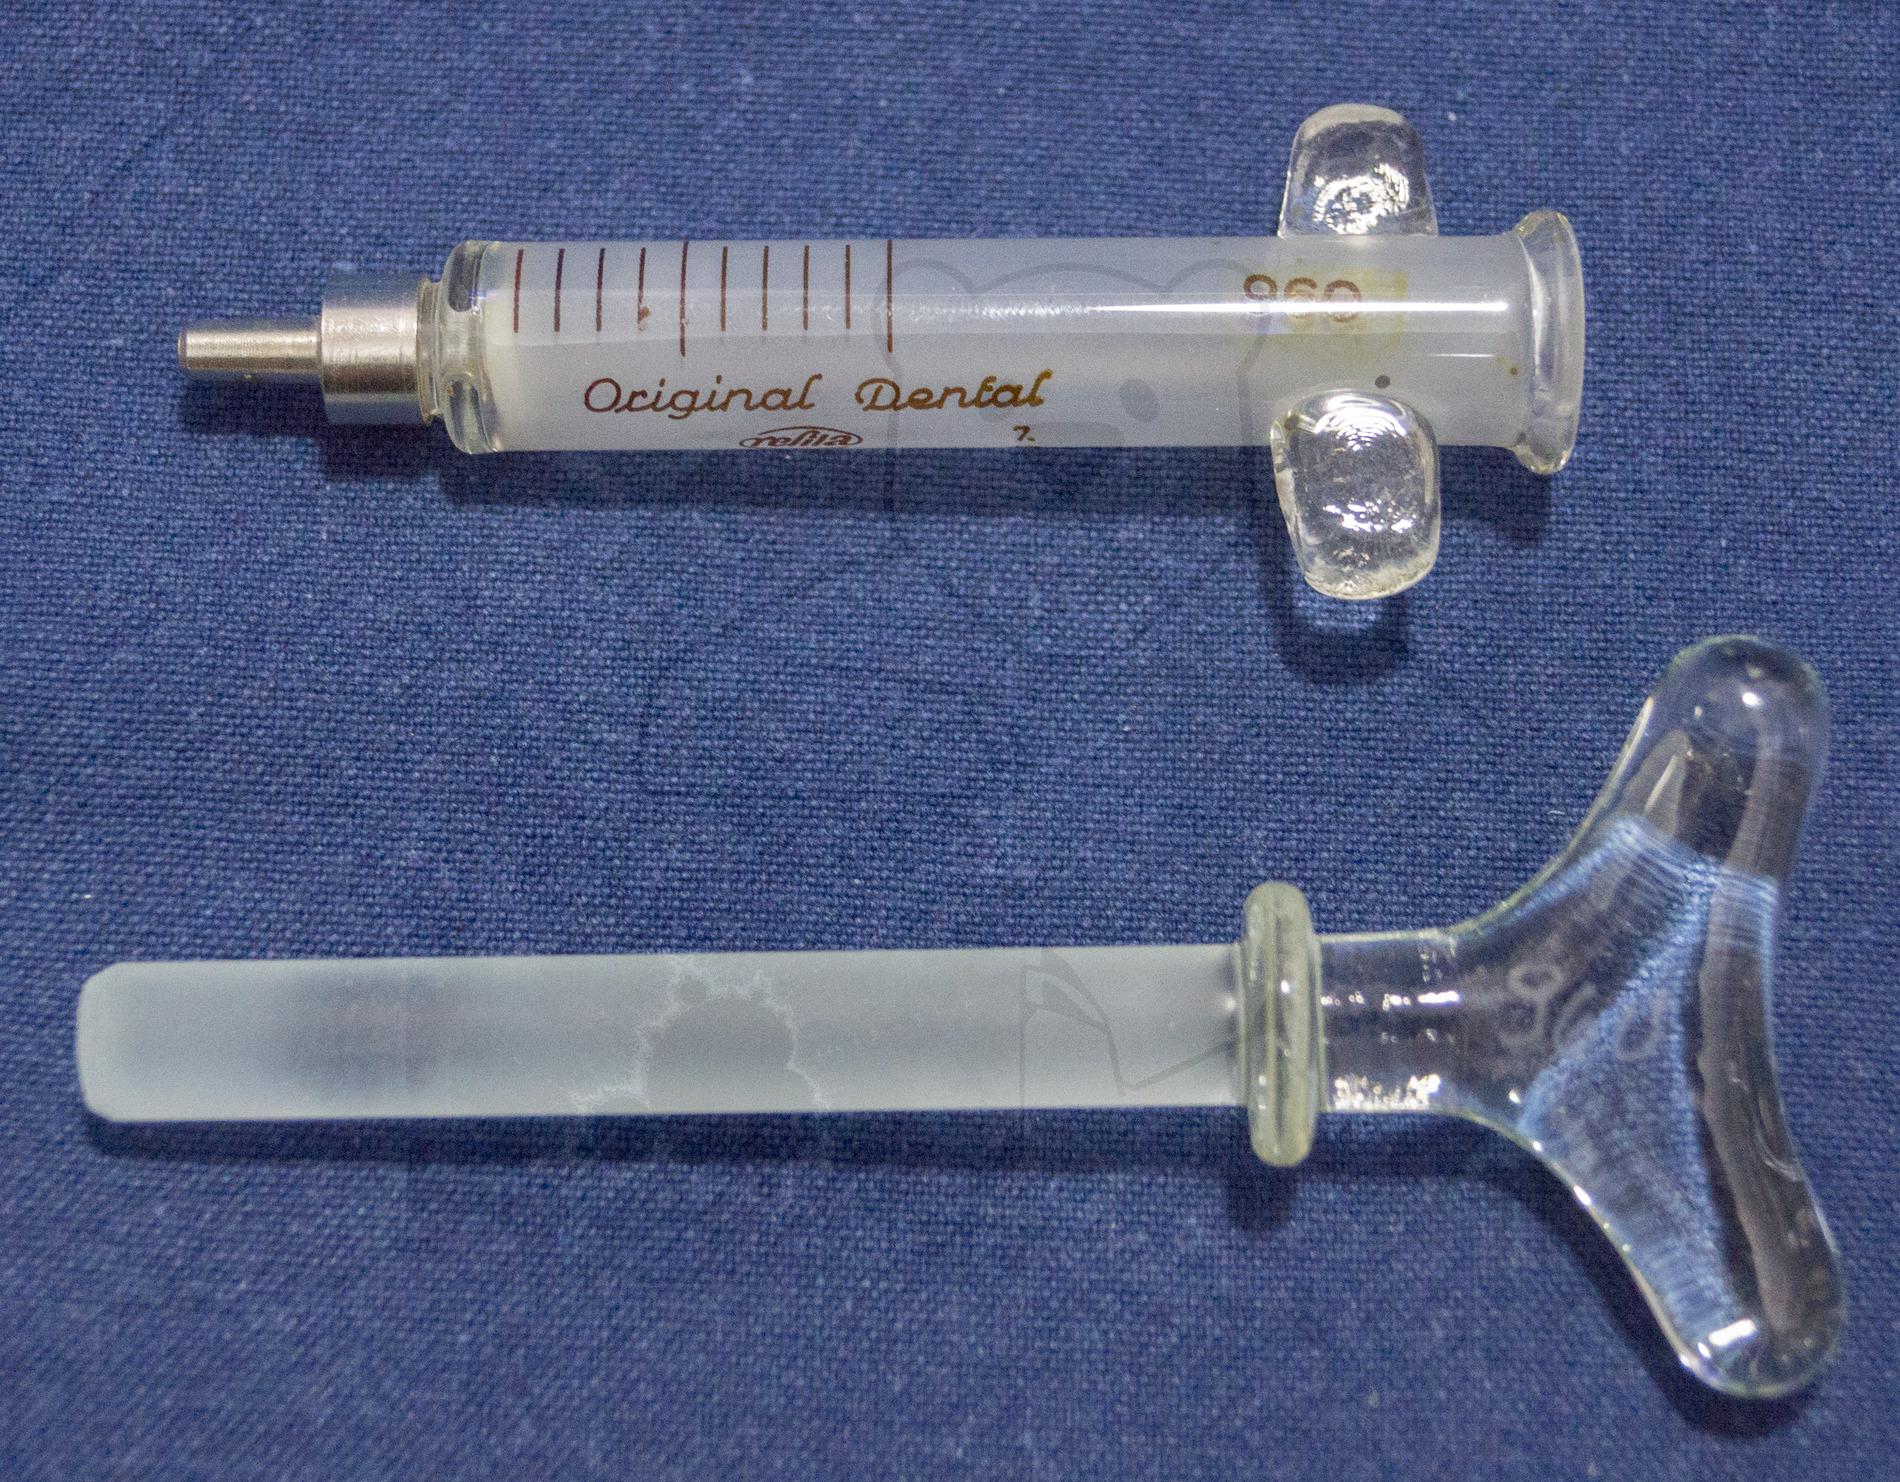 Zahnspritze "Refila", Mitte der 1970'er Jahre, Kolben und Stempel getrennt, beide mit der selben Nummer "960" um die Spritze nach dem sterilisieren wieder korrekt zusammenbauen zu können